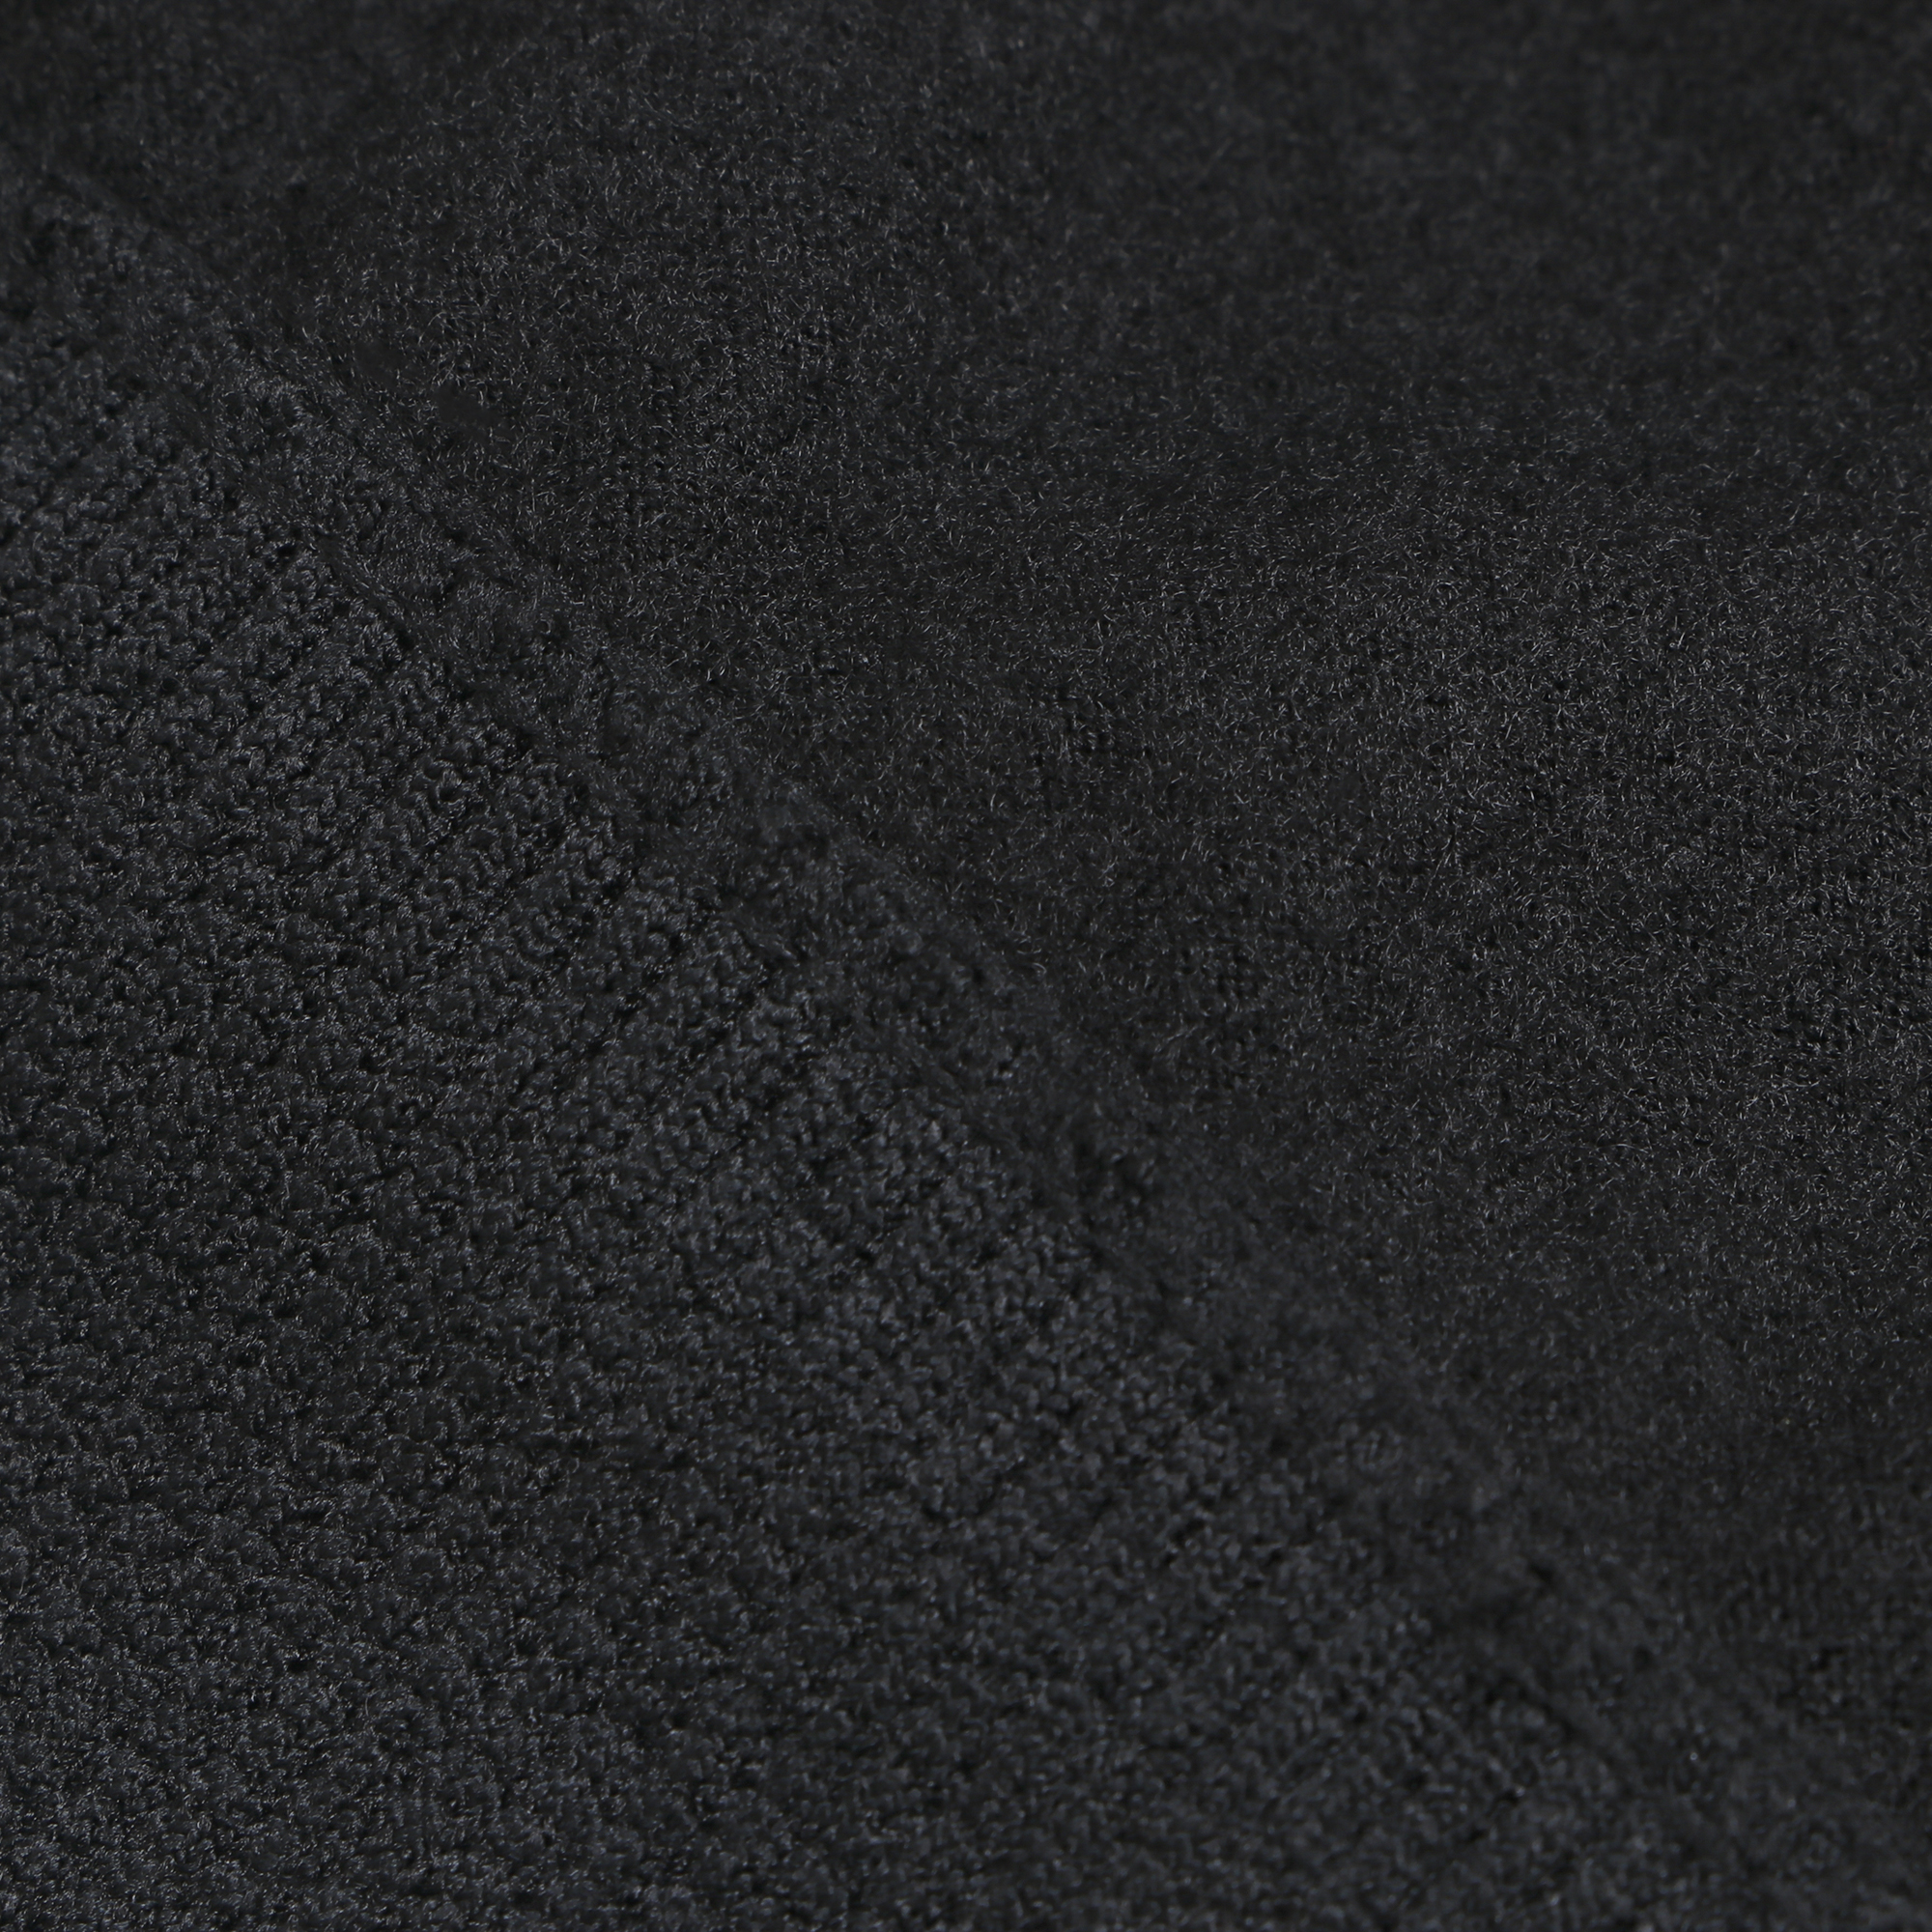 Кальсоны мужские с термоэффектом Oemen M-510 черные 52-54, цвет черный, размер 52-54 - фото 3